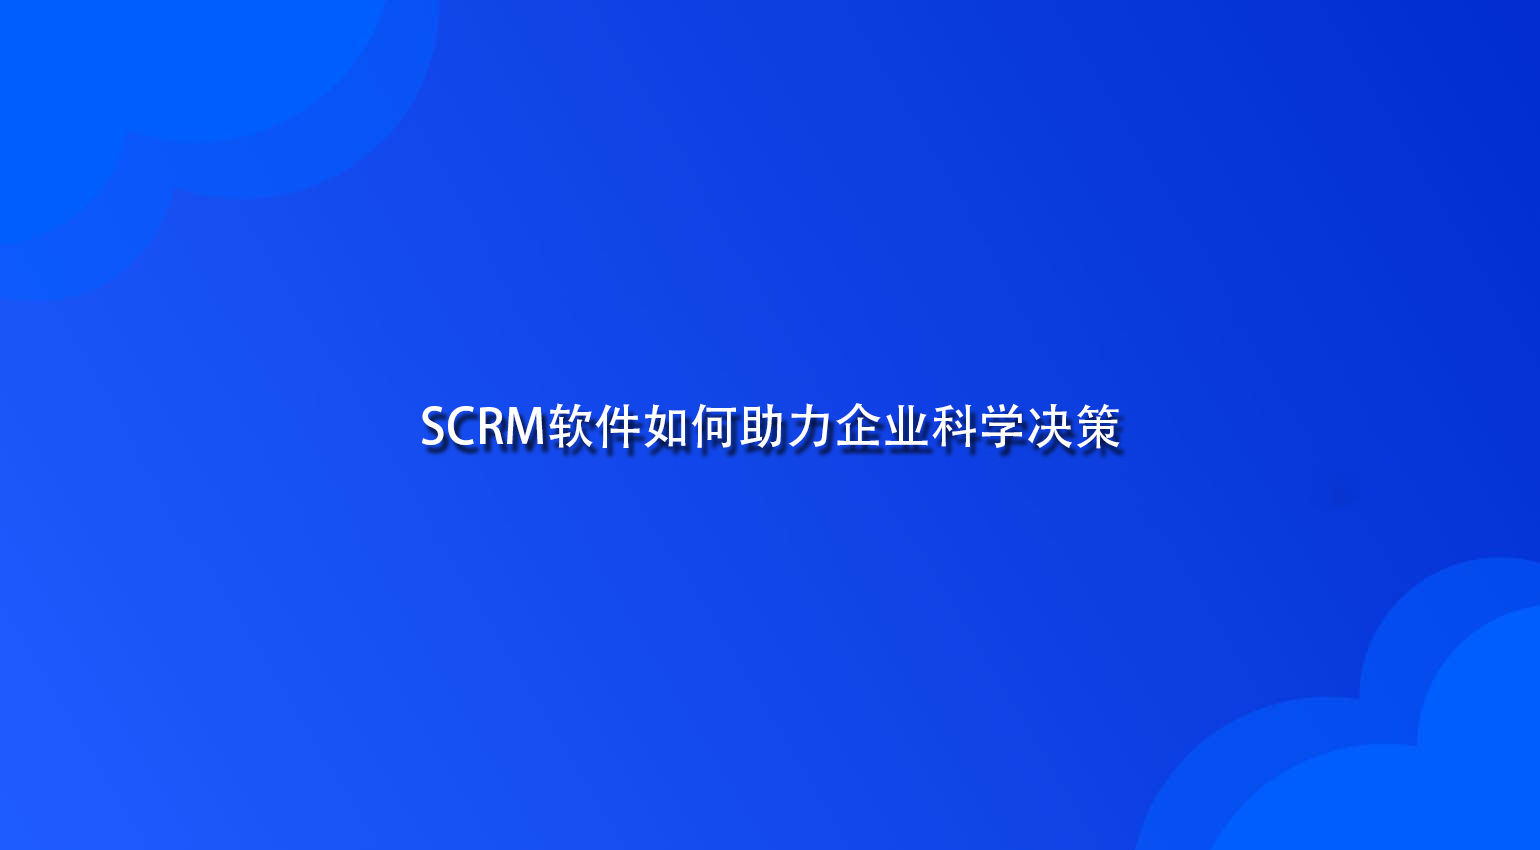 SCRM软件如何助力企业科学决策